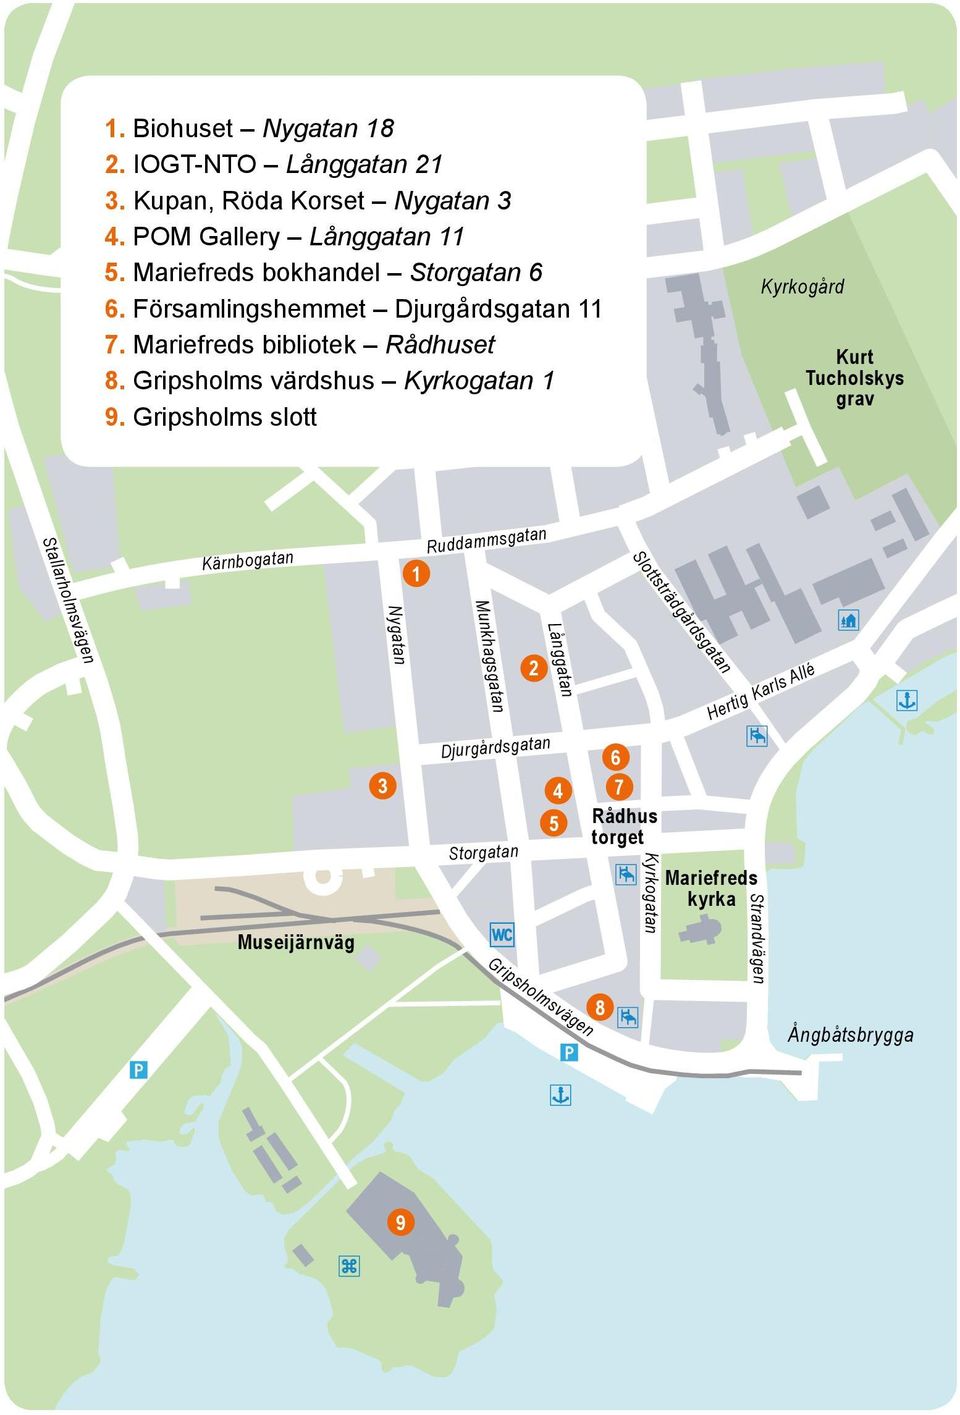 Gripsholms värdshus Kyrkogatan 1 9.